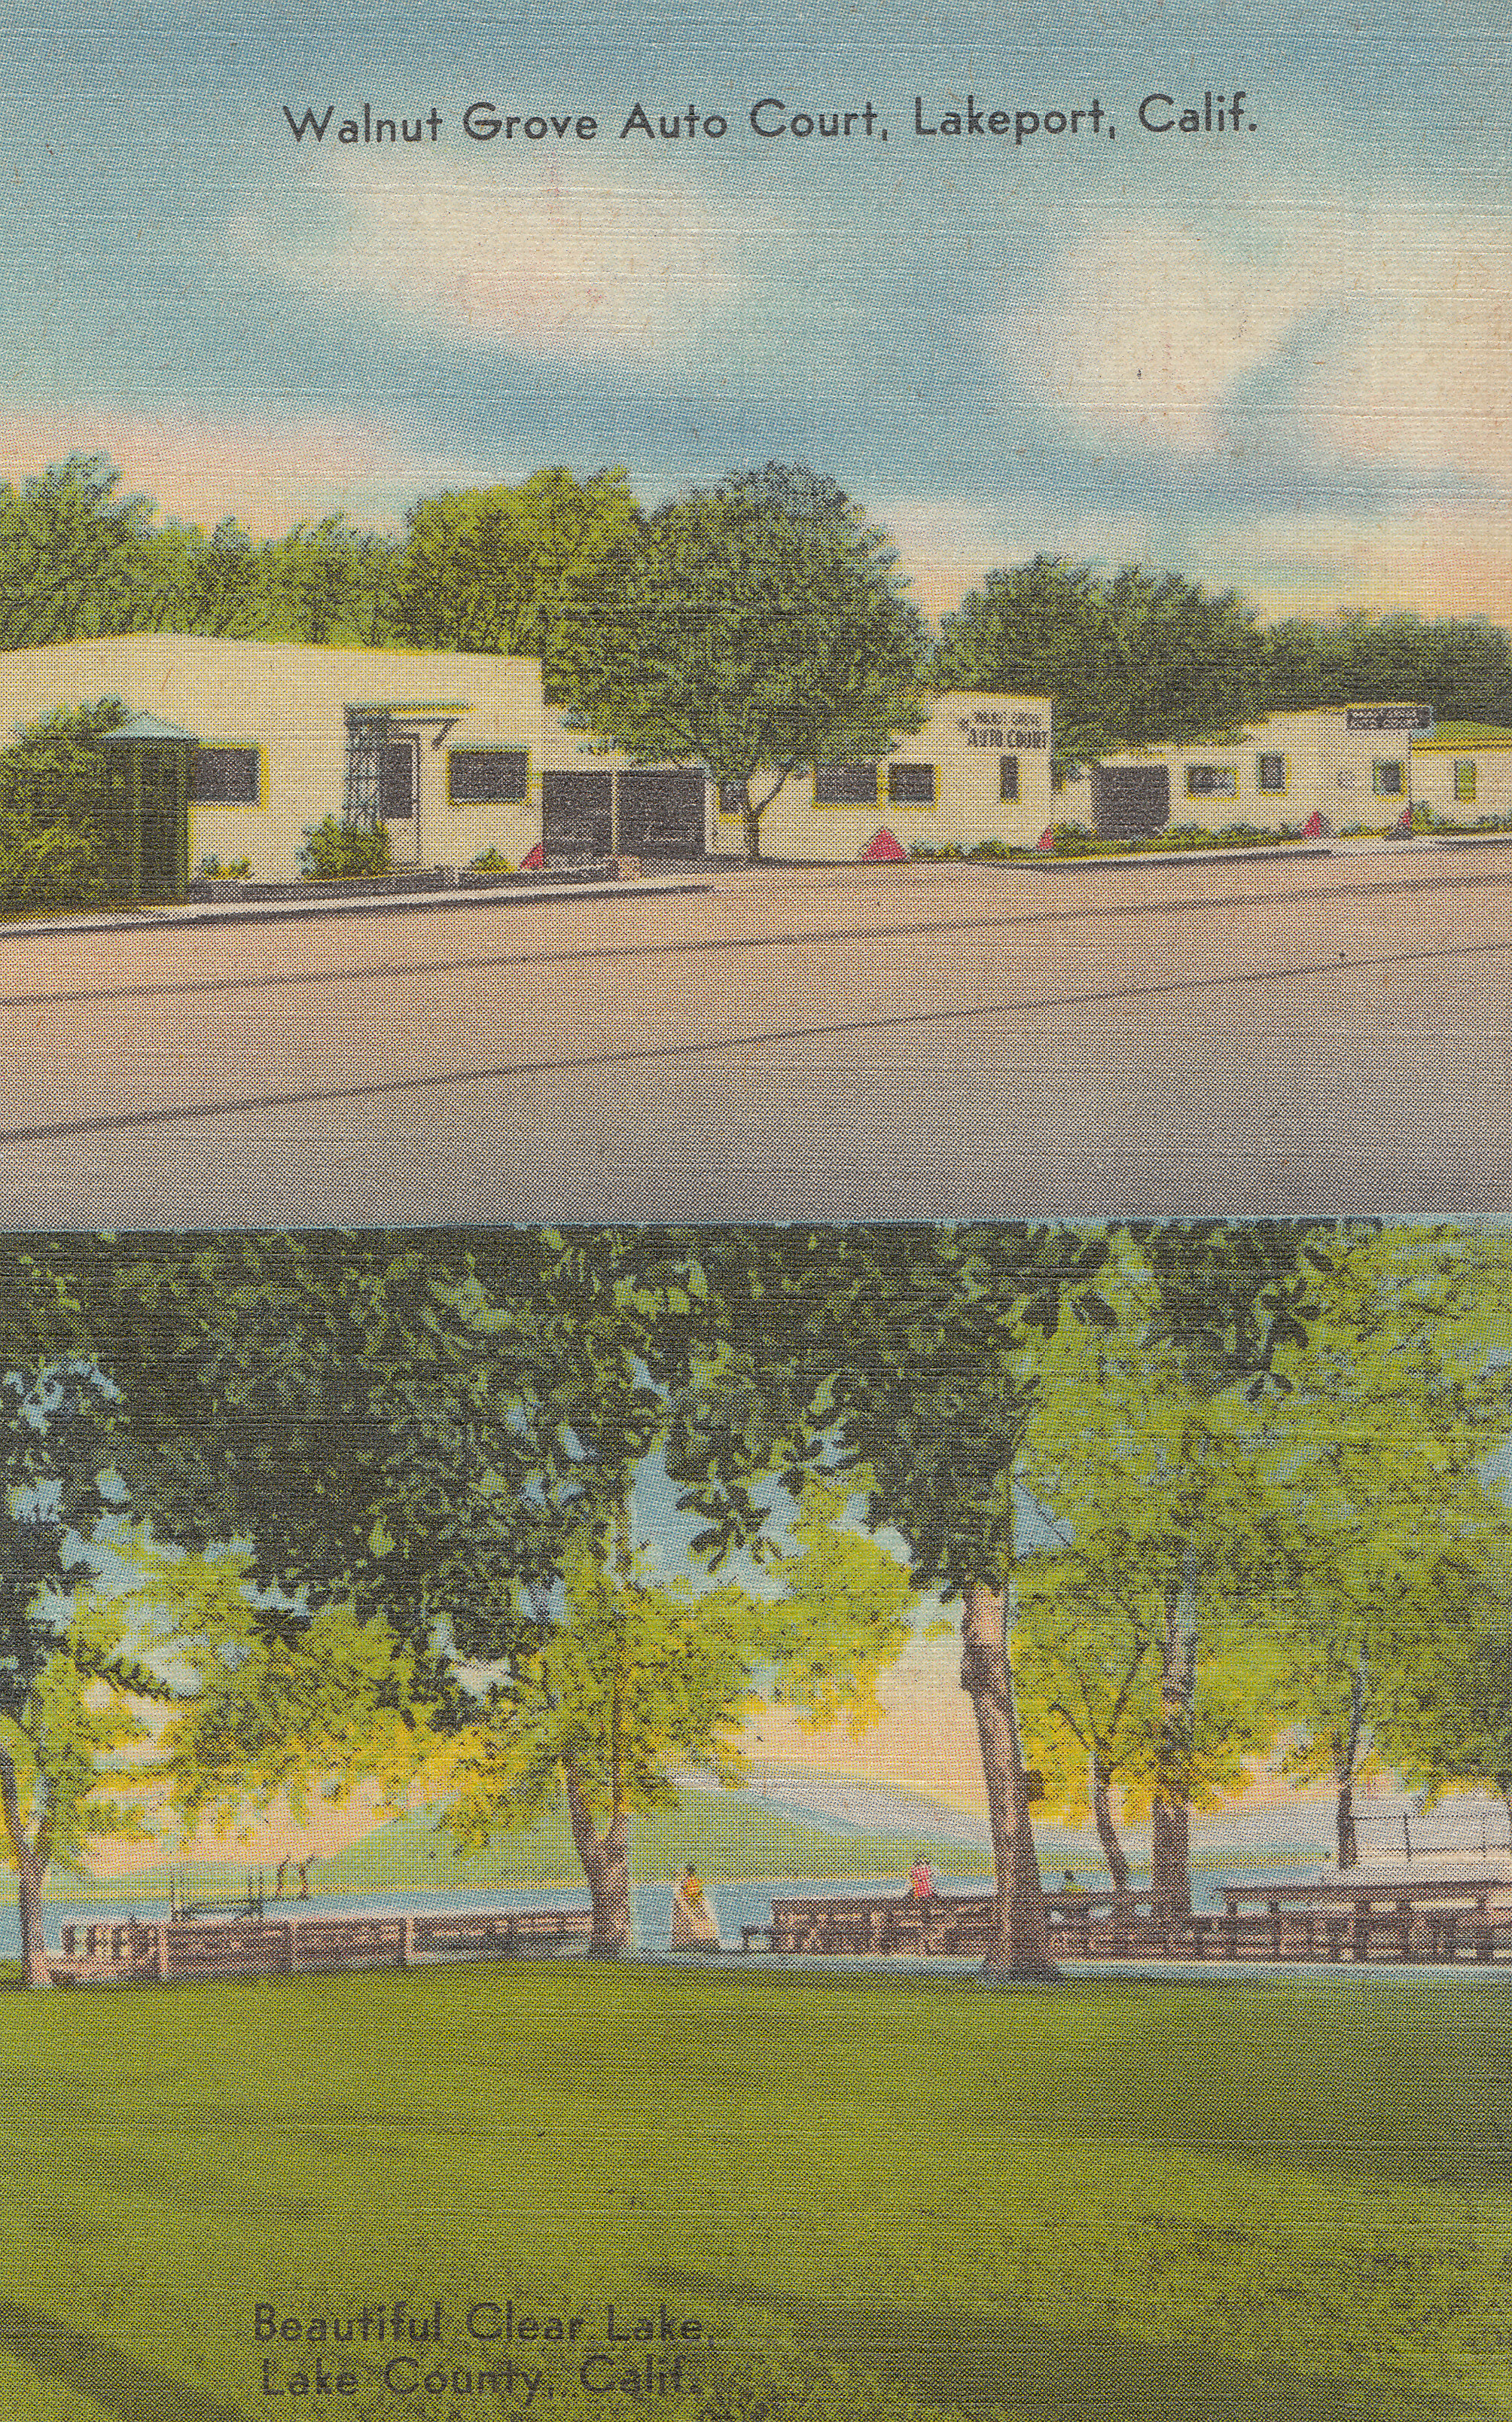 _Walnut Grove Auto Court 1955